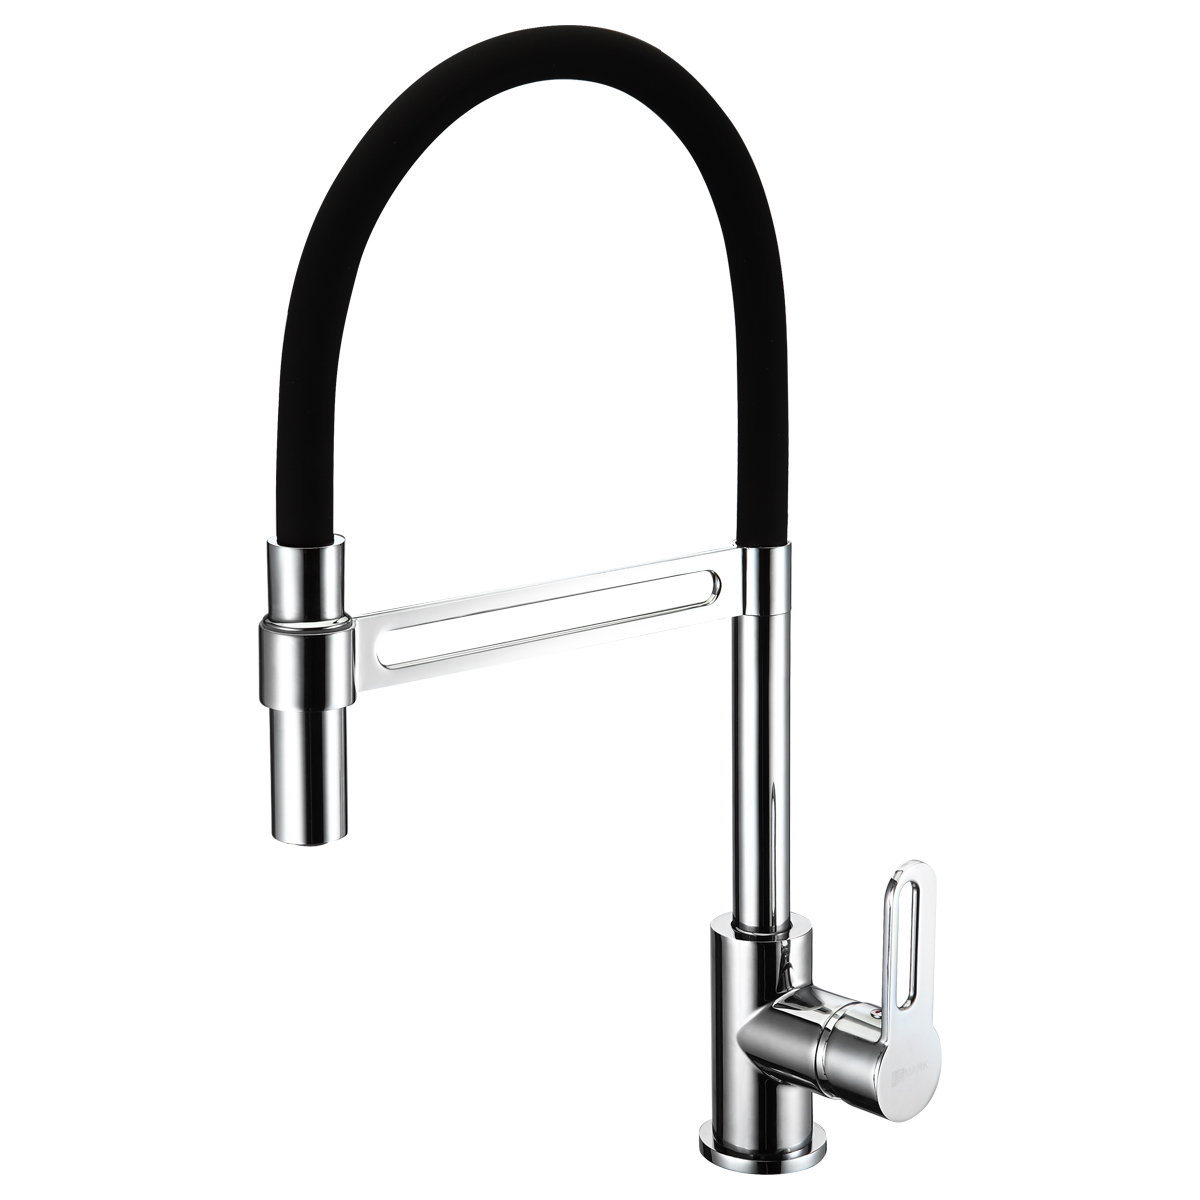 LM6006C Kitchen faucet with flexible swivel spout